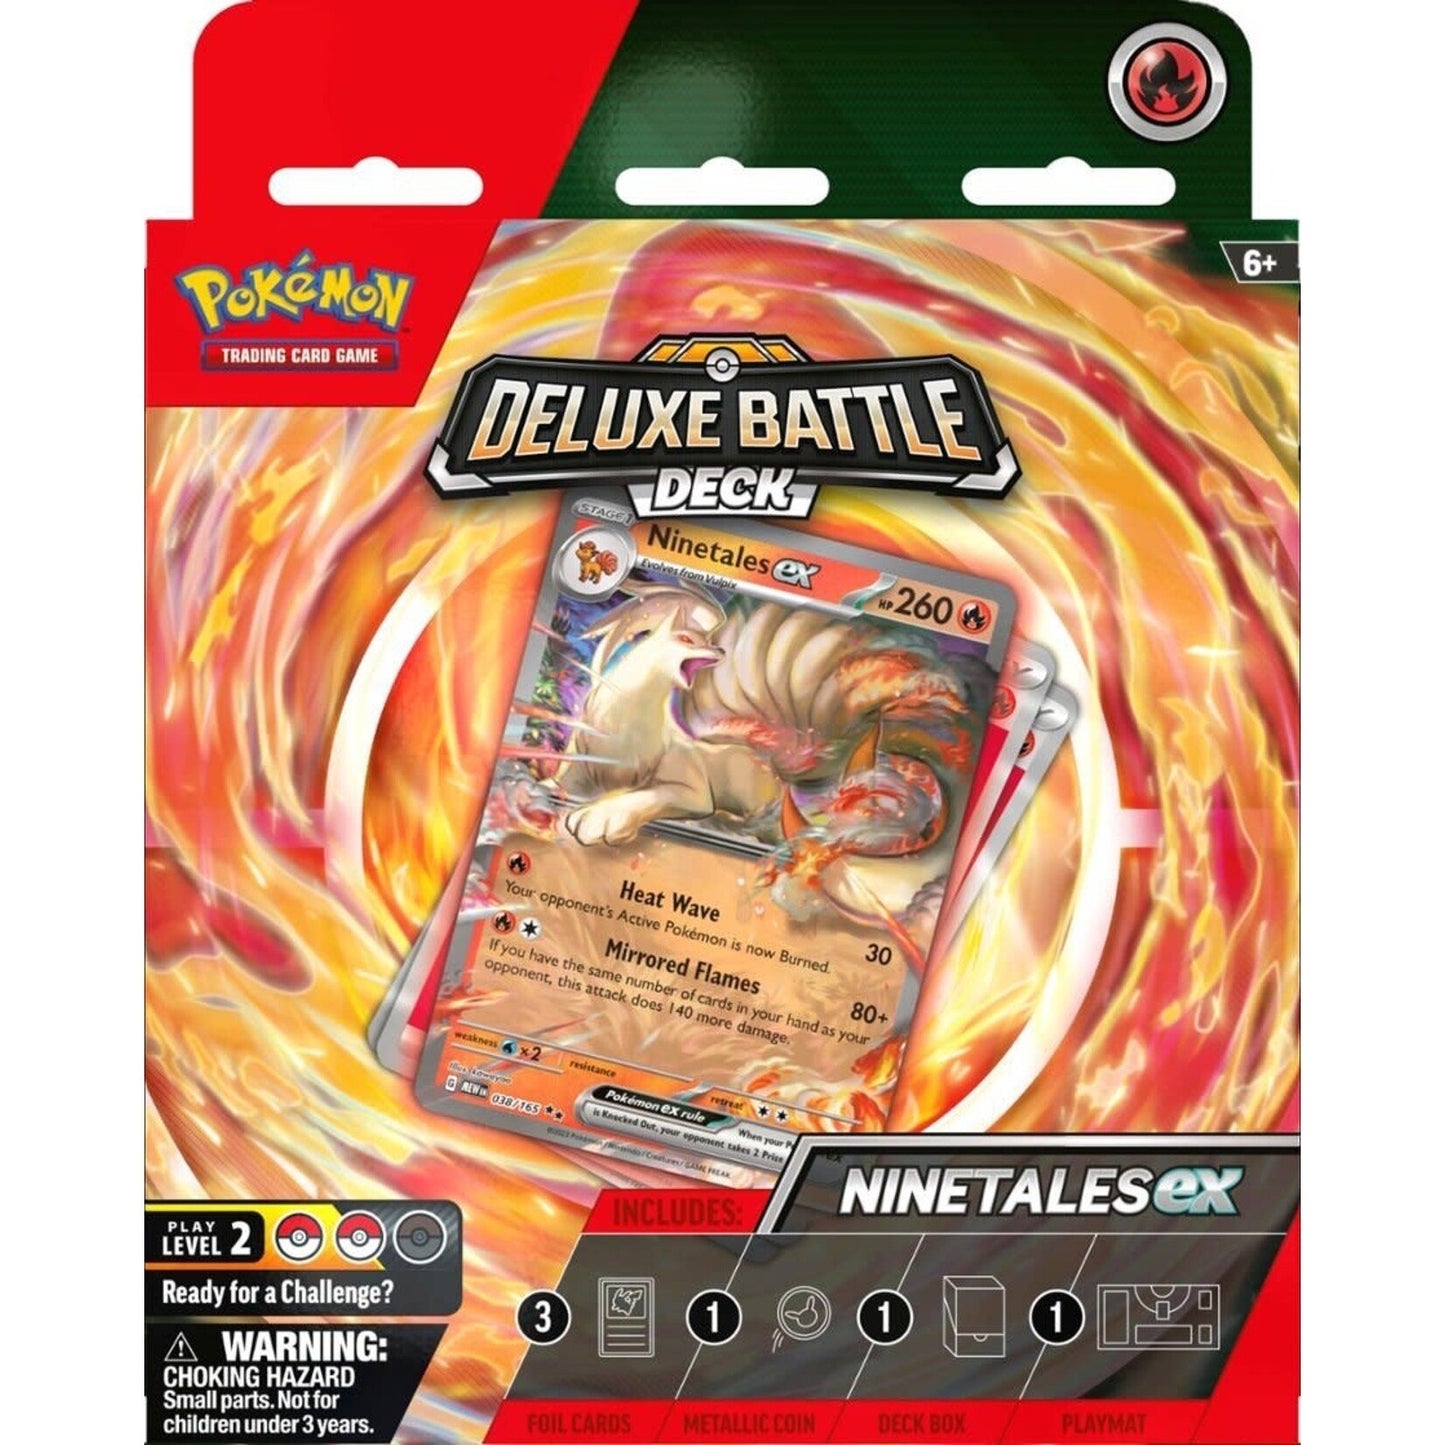 Pokémon - Deluxe Battle Deck - Ninetales ex